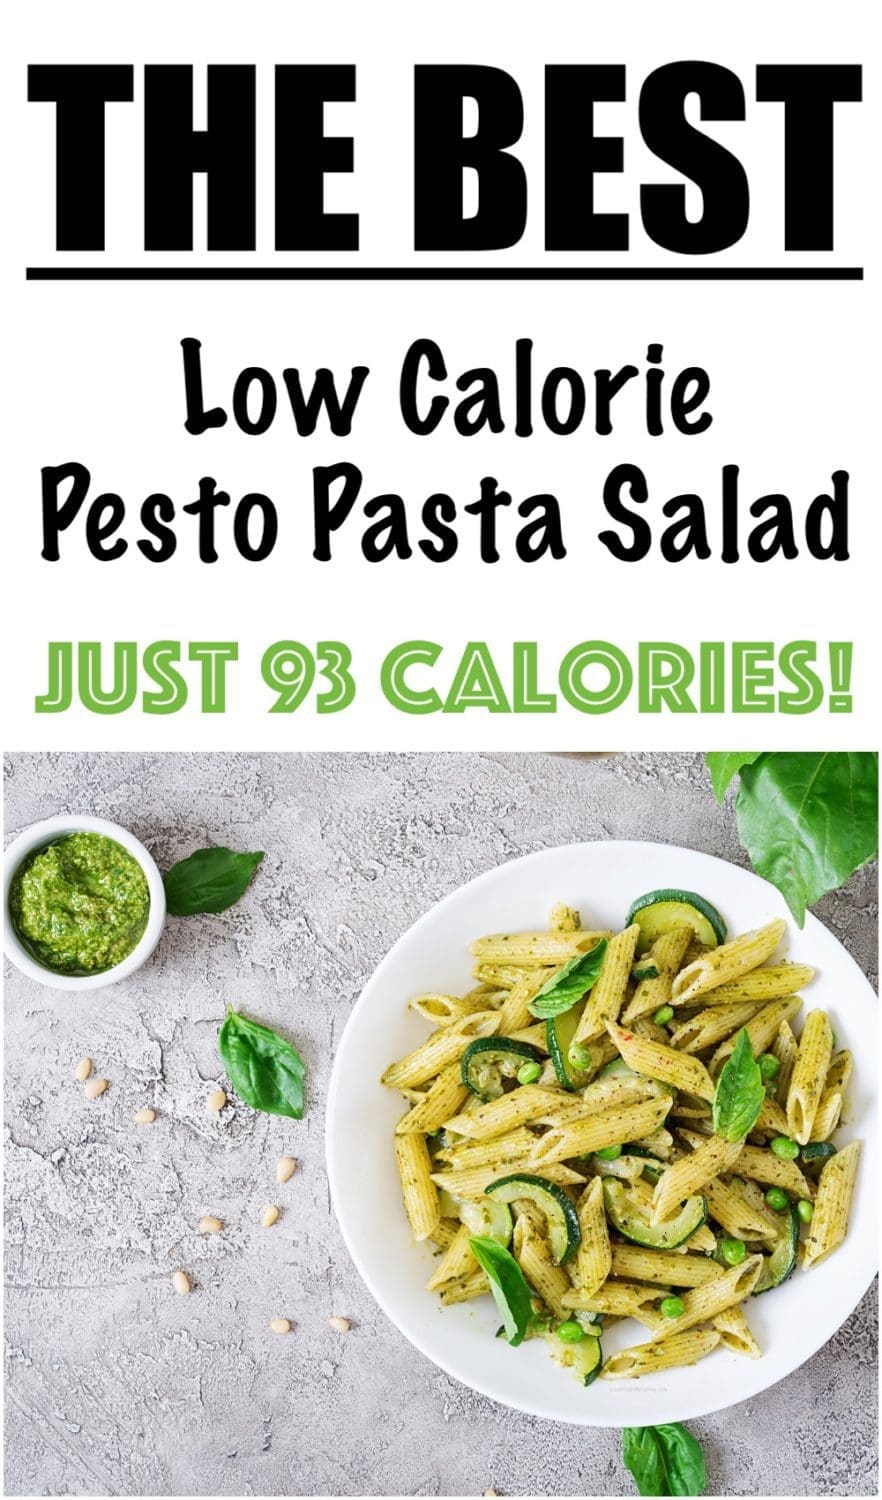 Low Calorie Pesto Pasta Salad Recipe